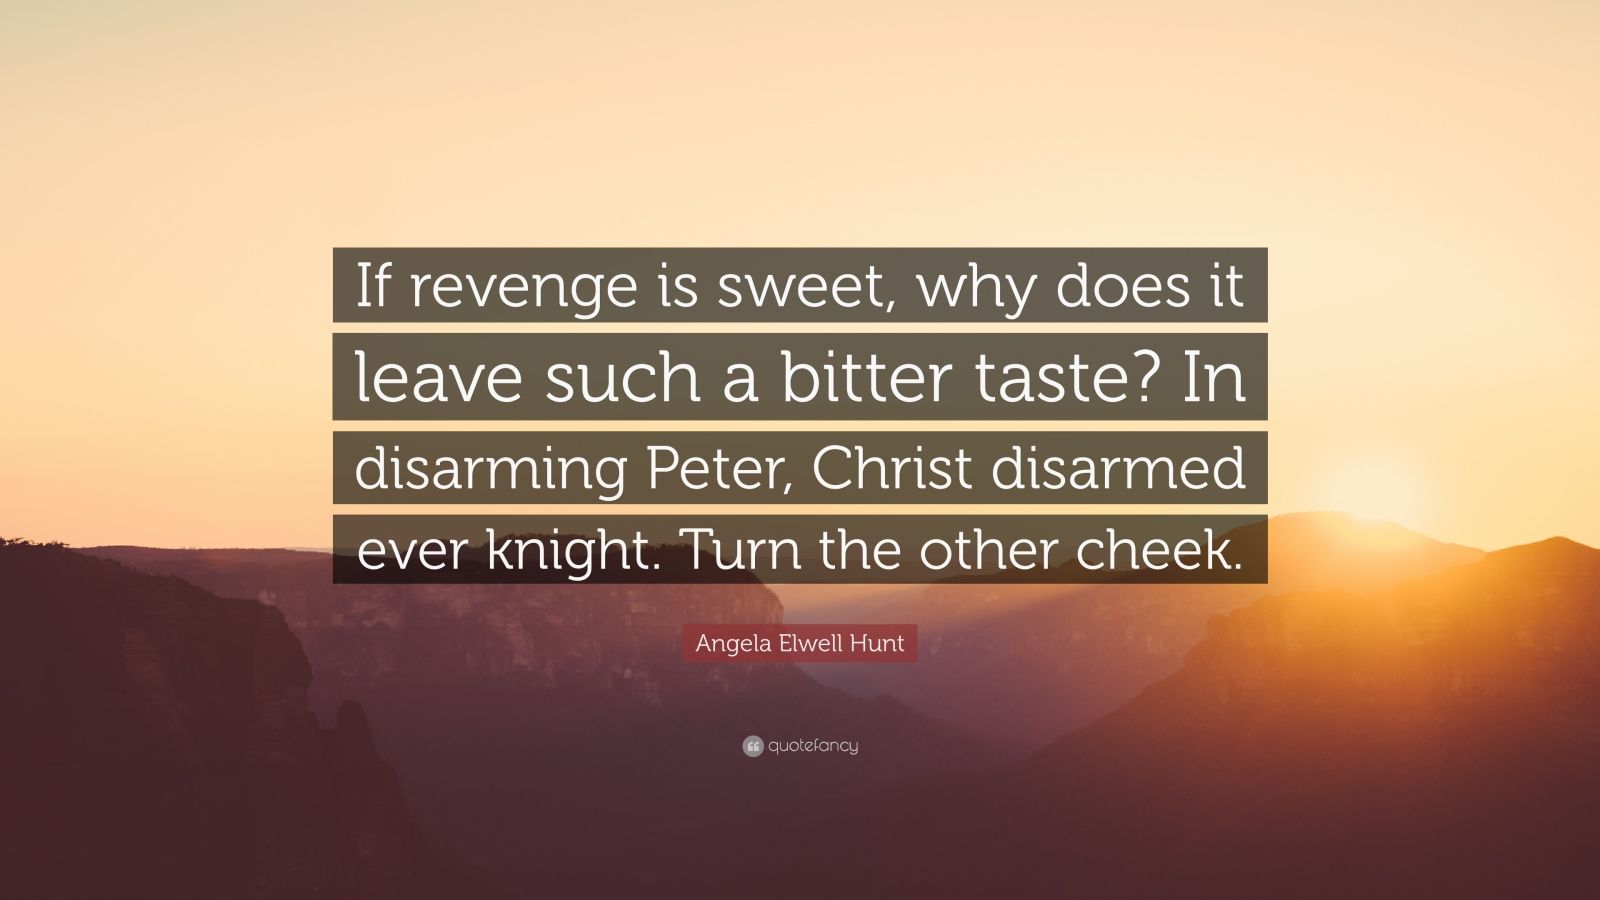 Review: 'Do Revenger' is best when bitter, not sweet